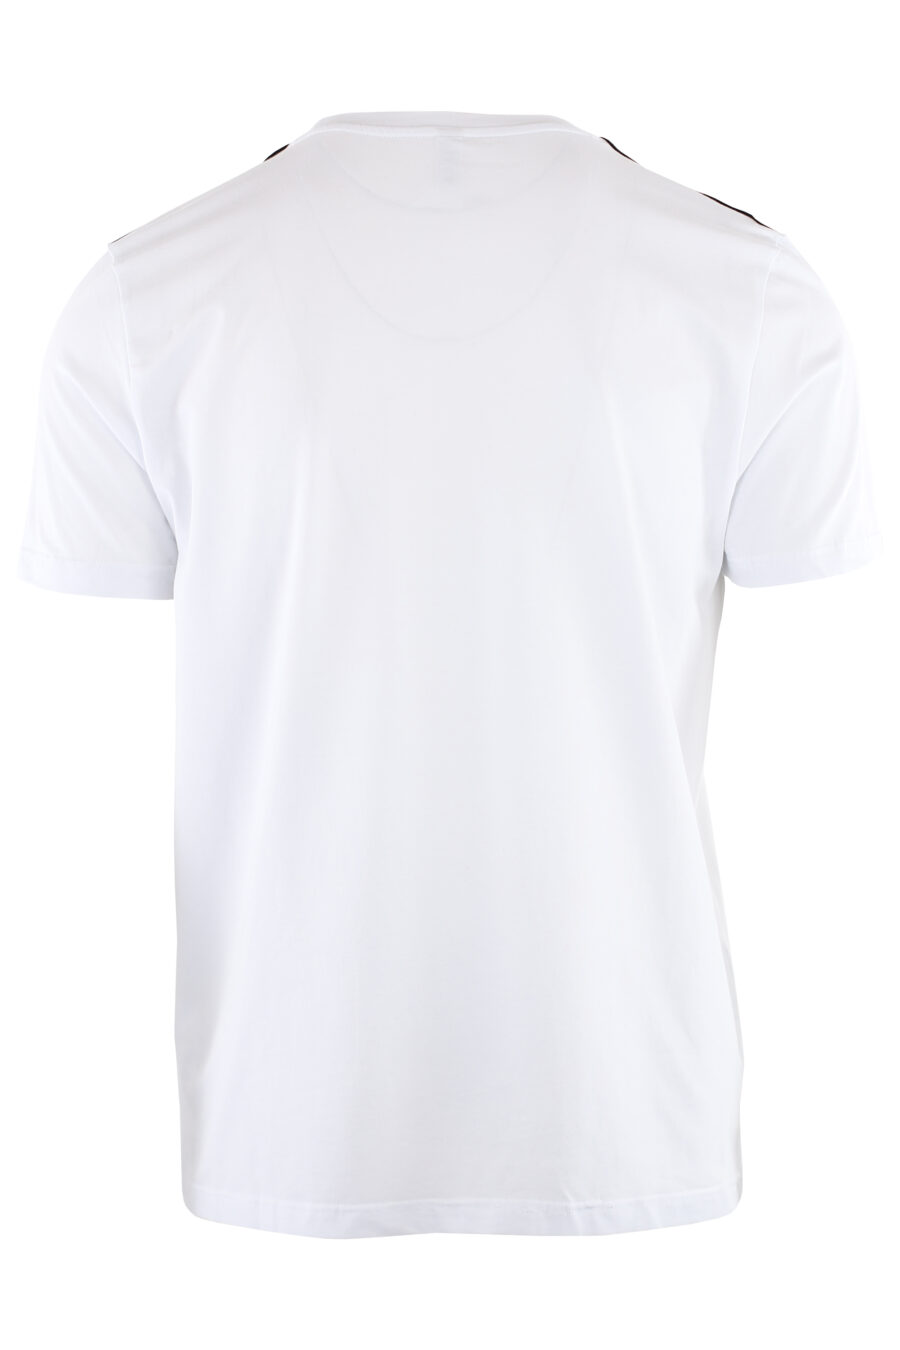 Pack de dos camisetas blancas con logo en cinta en hombros - IMG 7324